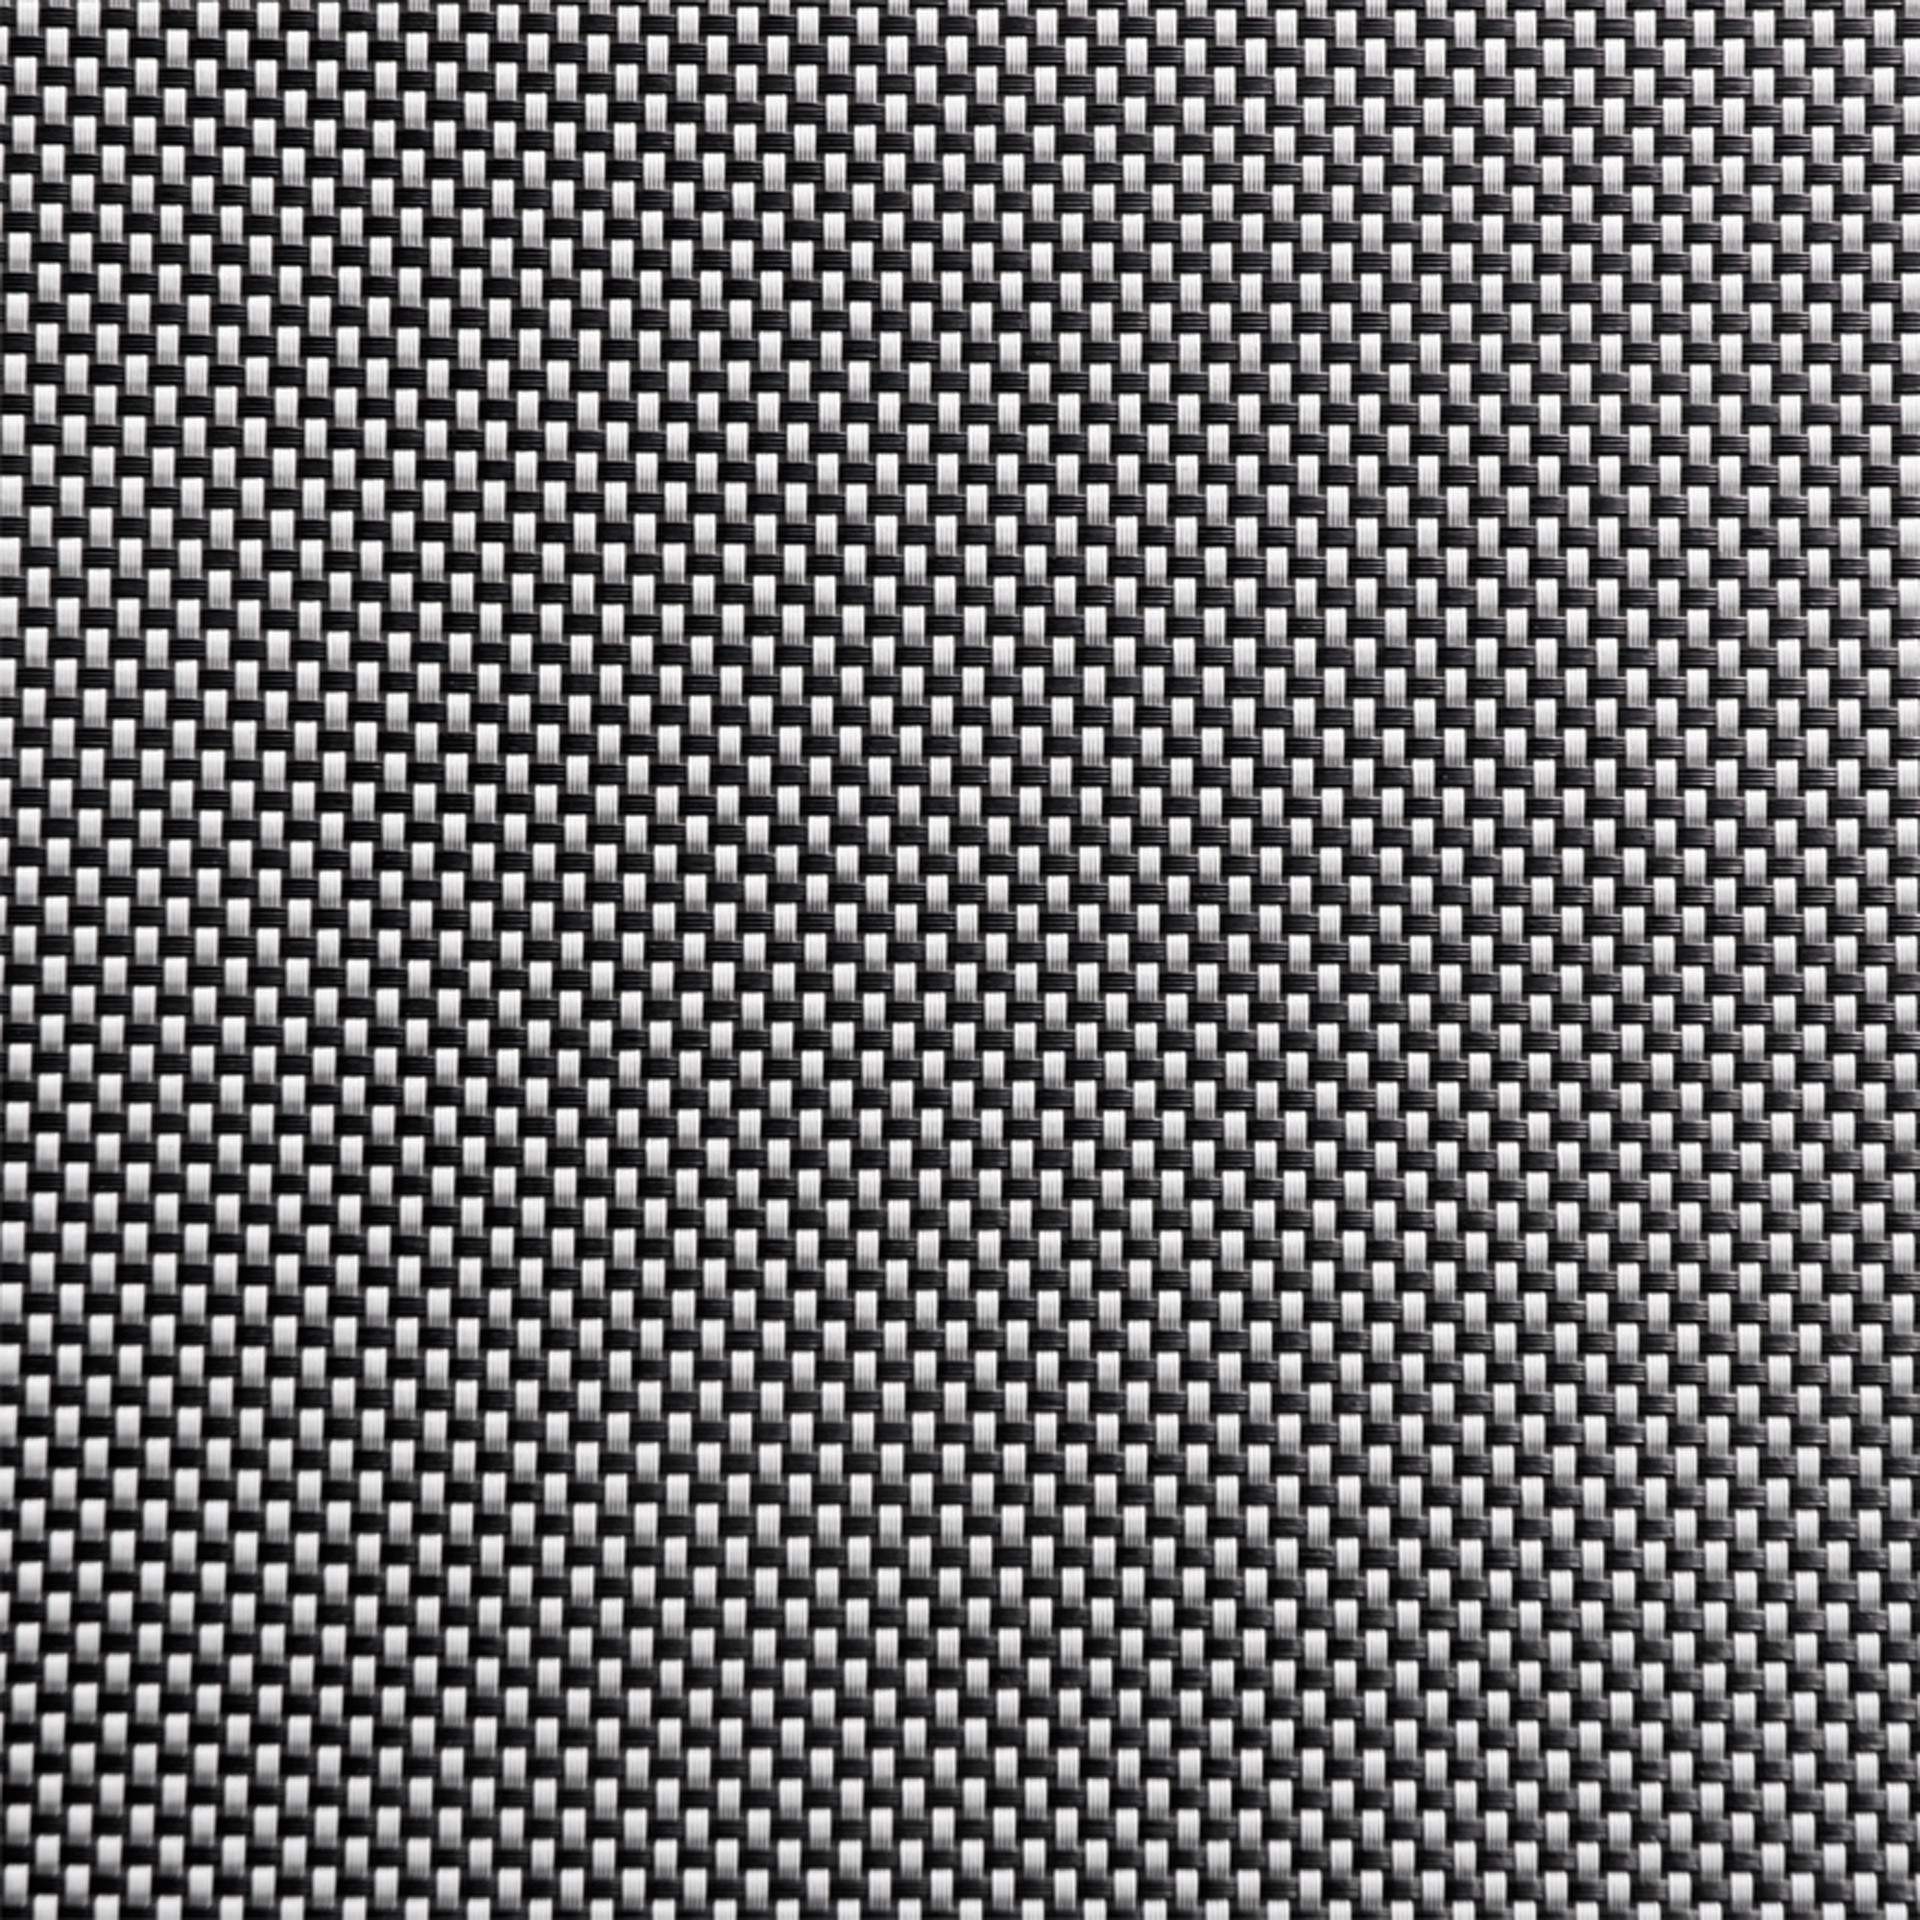 Tischset - schwarz / weiß - rechteckig - Abm. 45 x 33 cm - Kunststoff - 60520-B